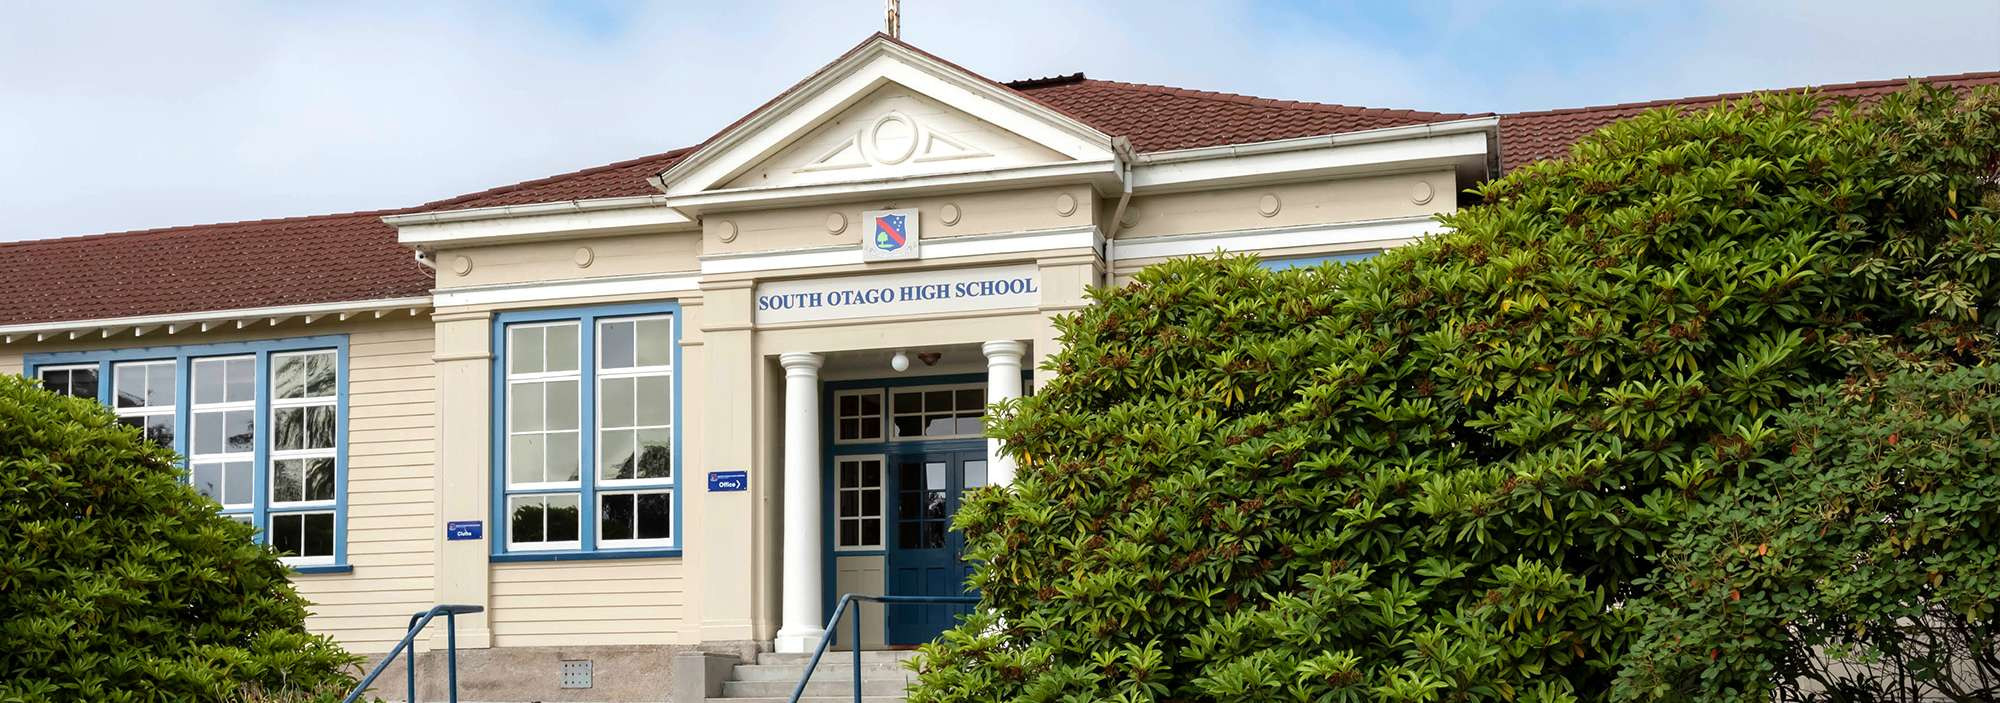 South Otago High School